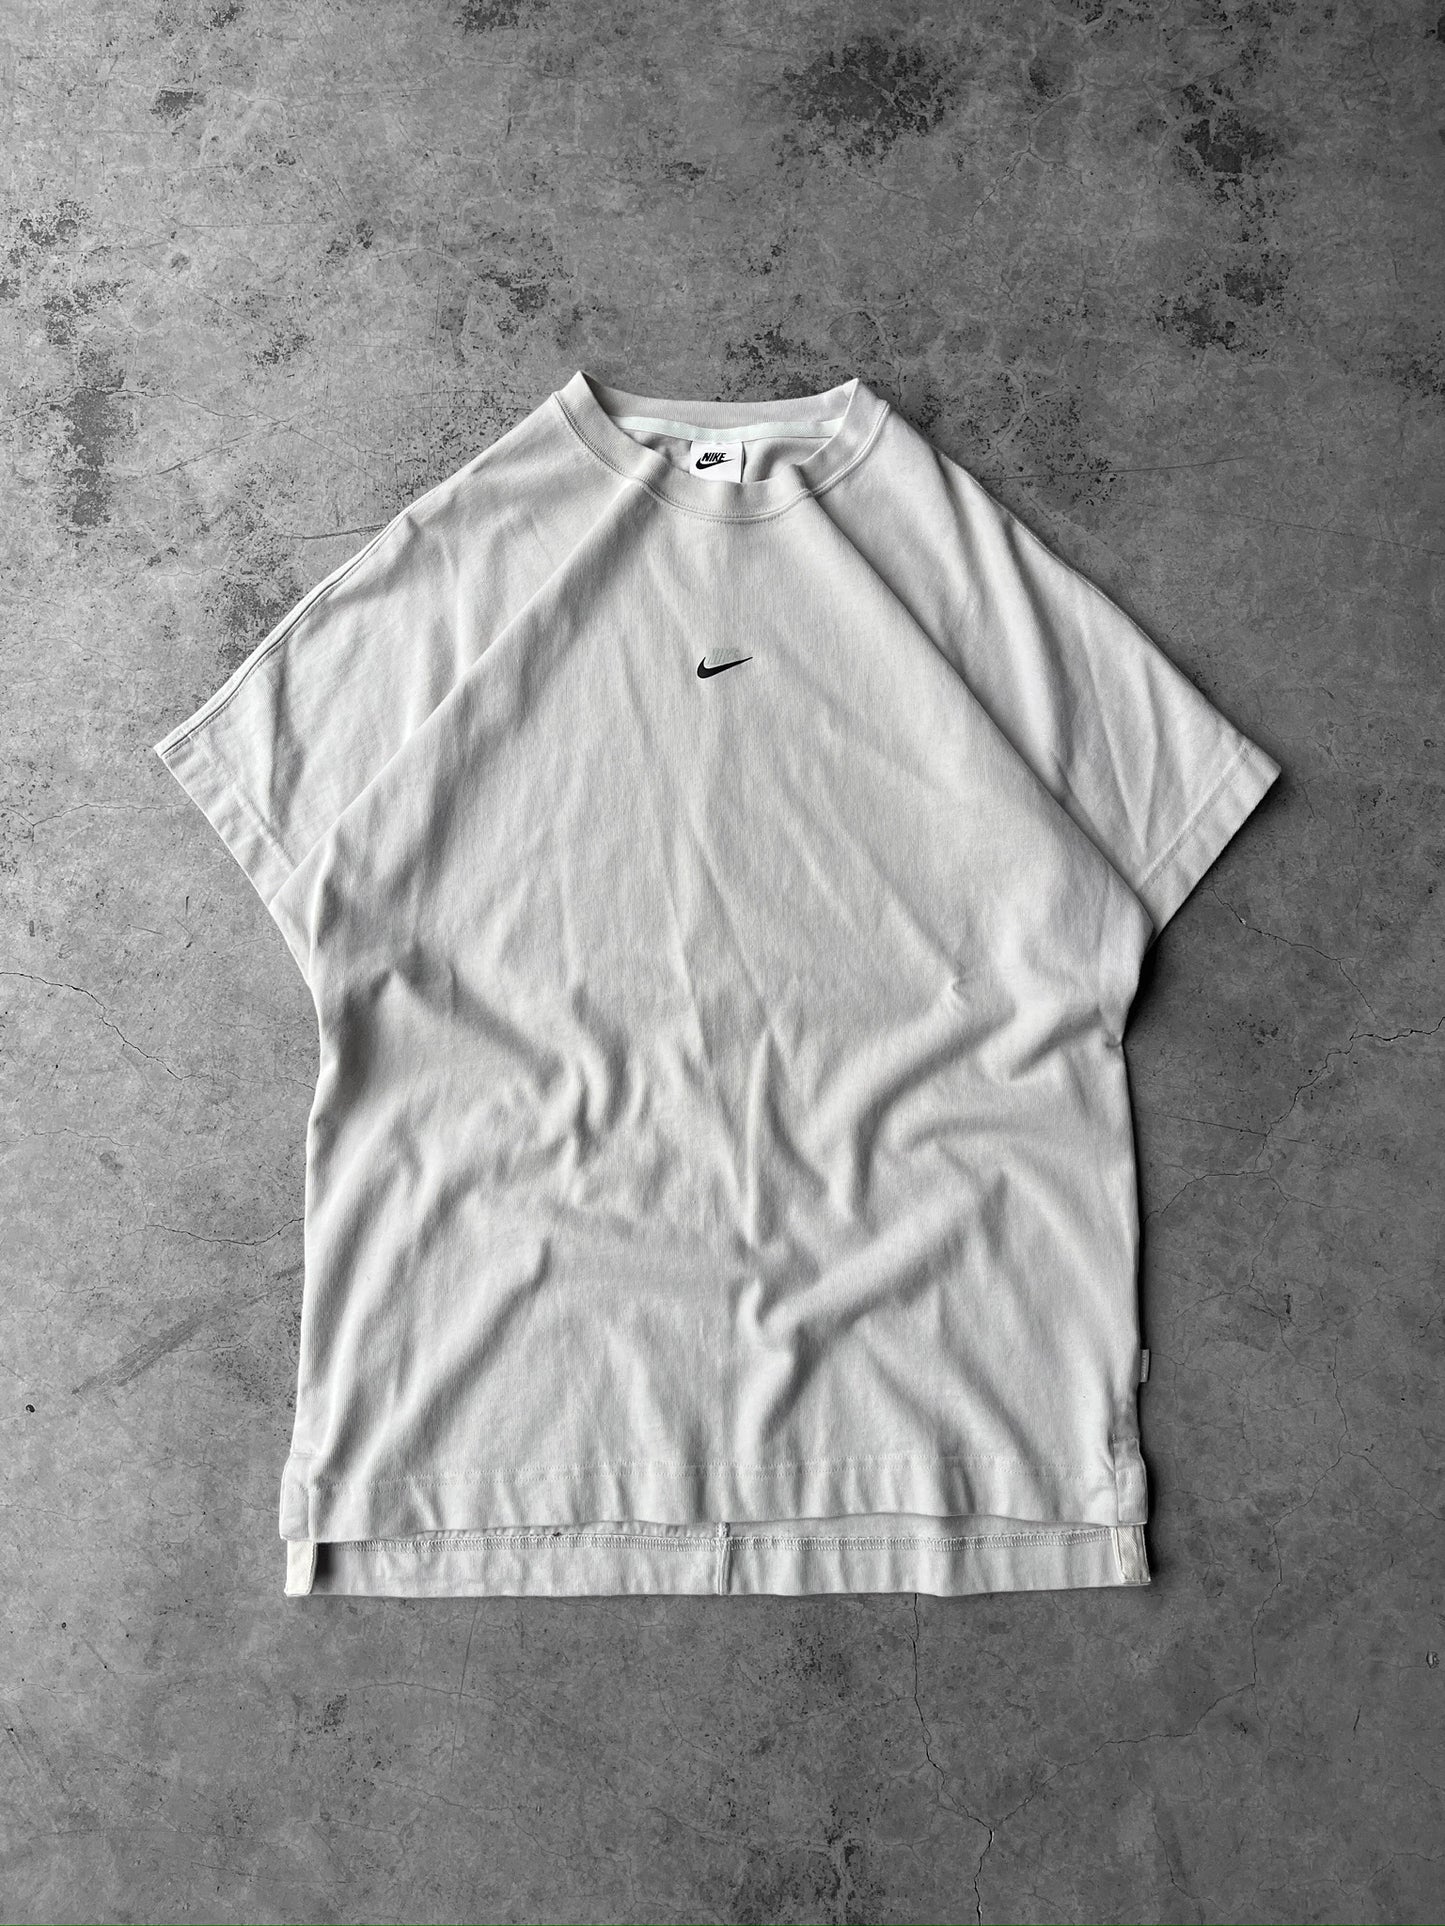 Nike Center Swoosh Zipper Pocket Shirt - XL